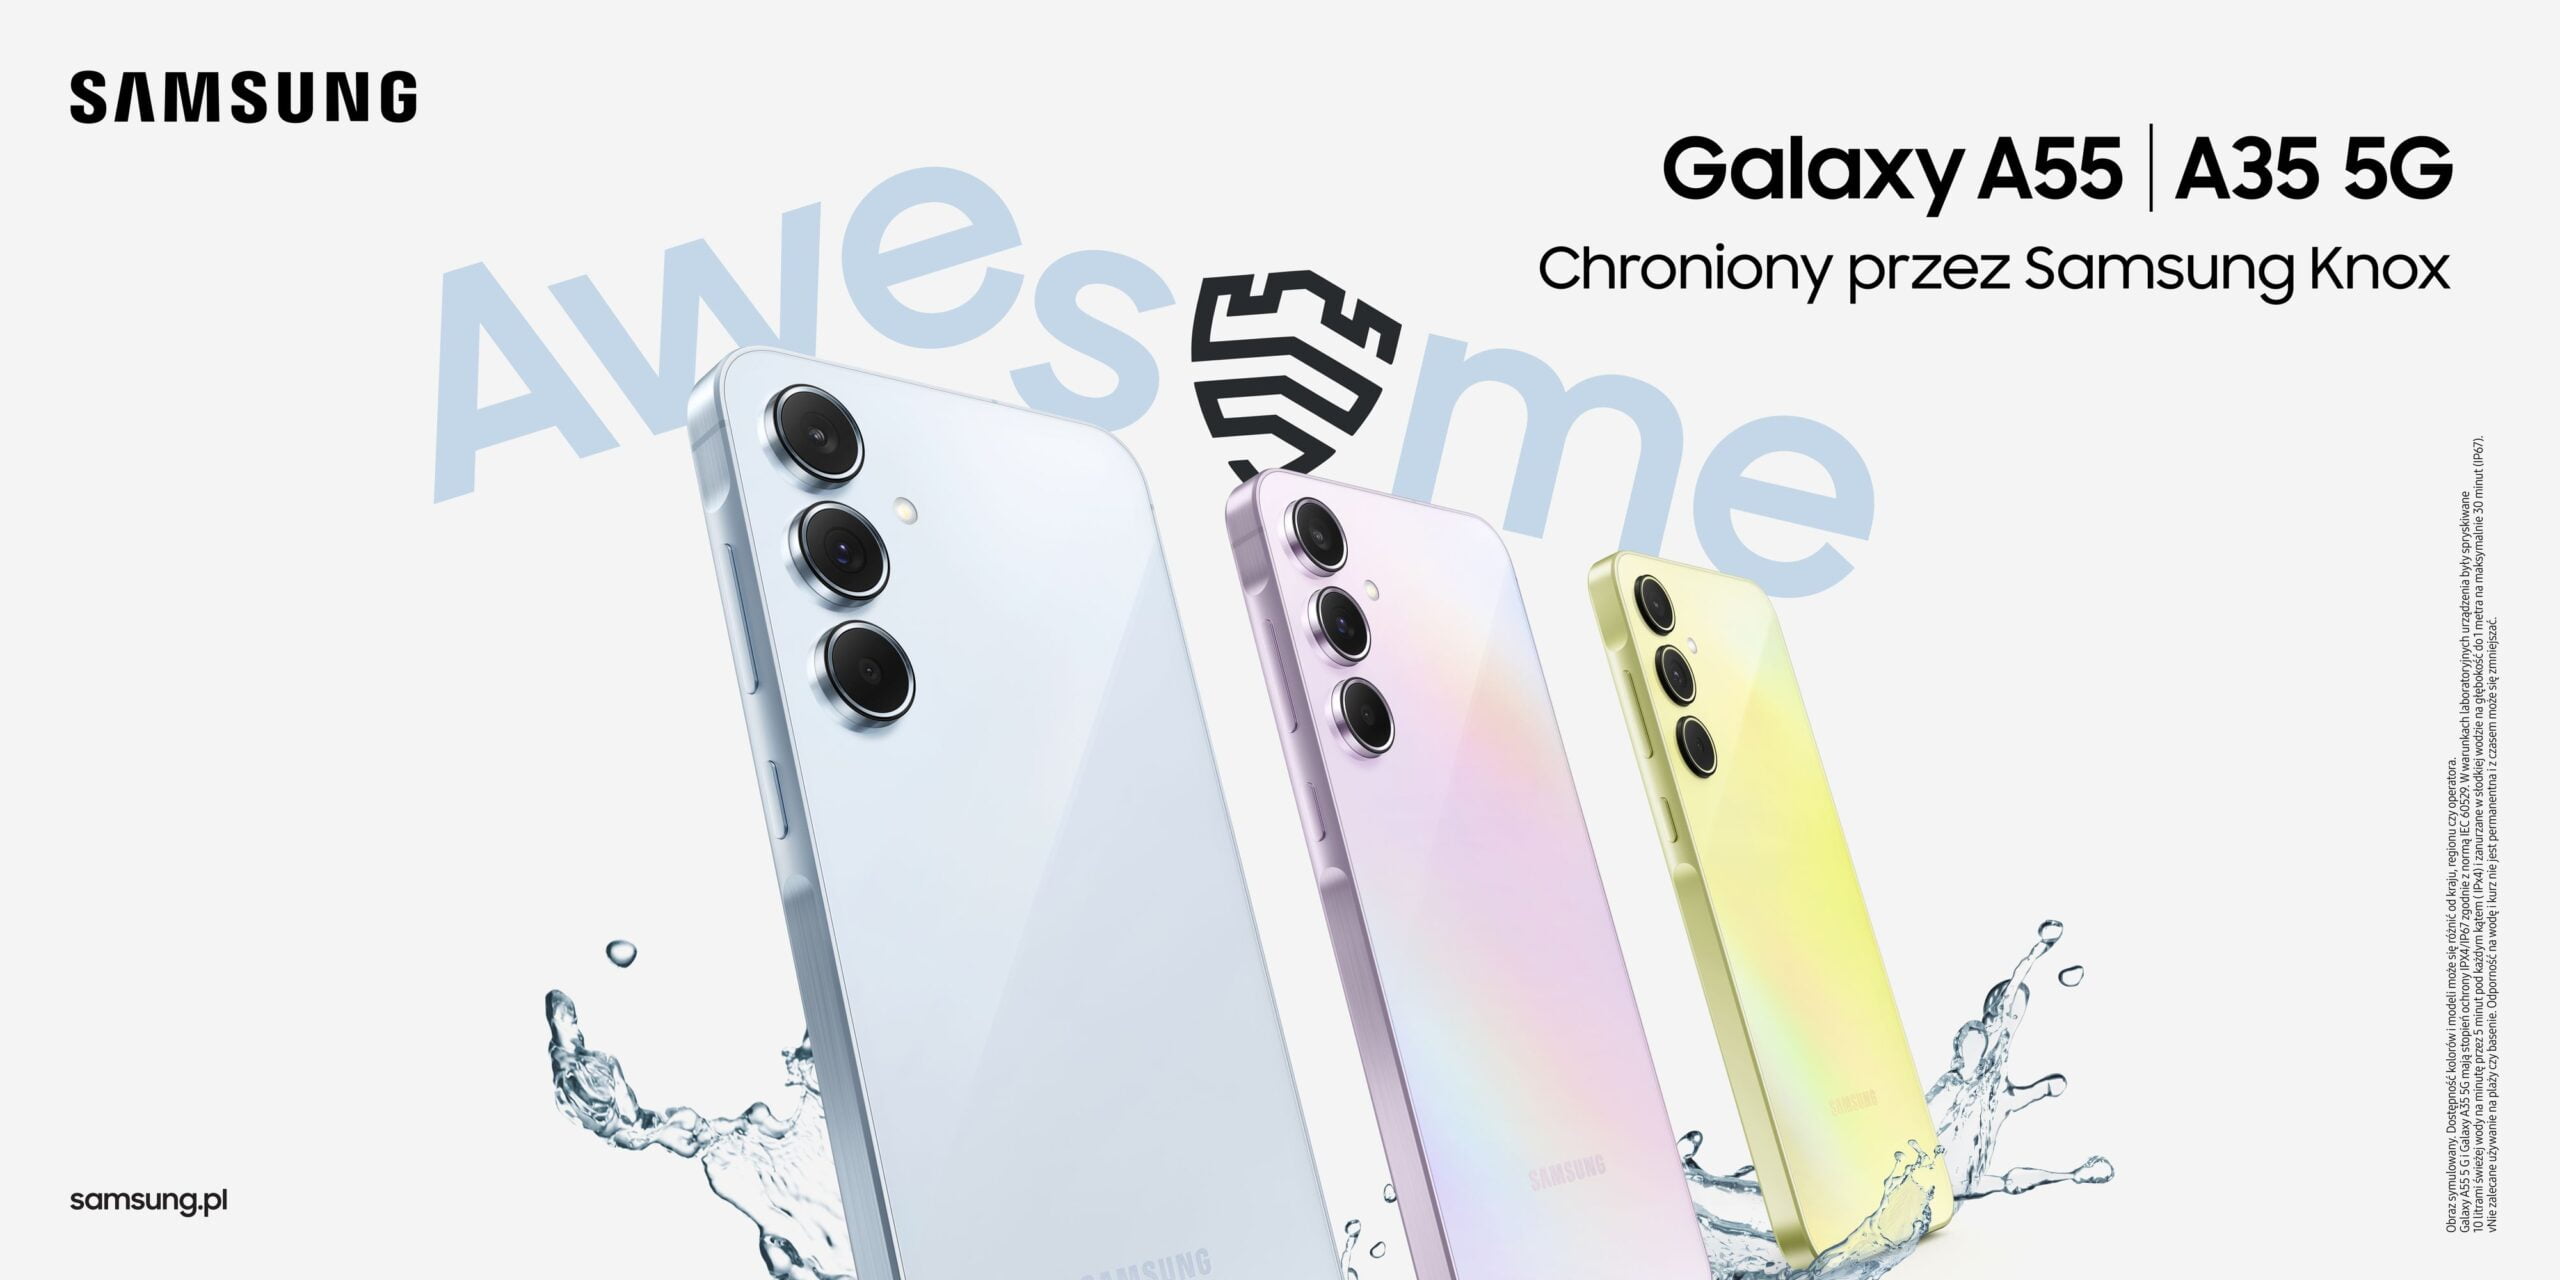 Reklama smartfonów Samsung Galaxy A55 i A35 5G z trzema modelami telefonów w kolorach biały, różowy i żółty, unoszącymi się nad powierzchnią z efektem rozbryzgującej się wody, oraz hasłem "Awesome" i informacją "Chroniony przez Samsung Knox".